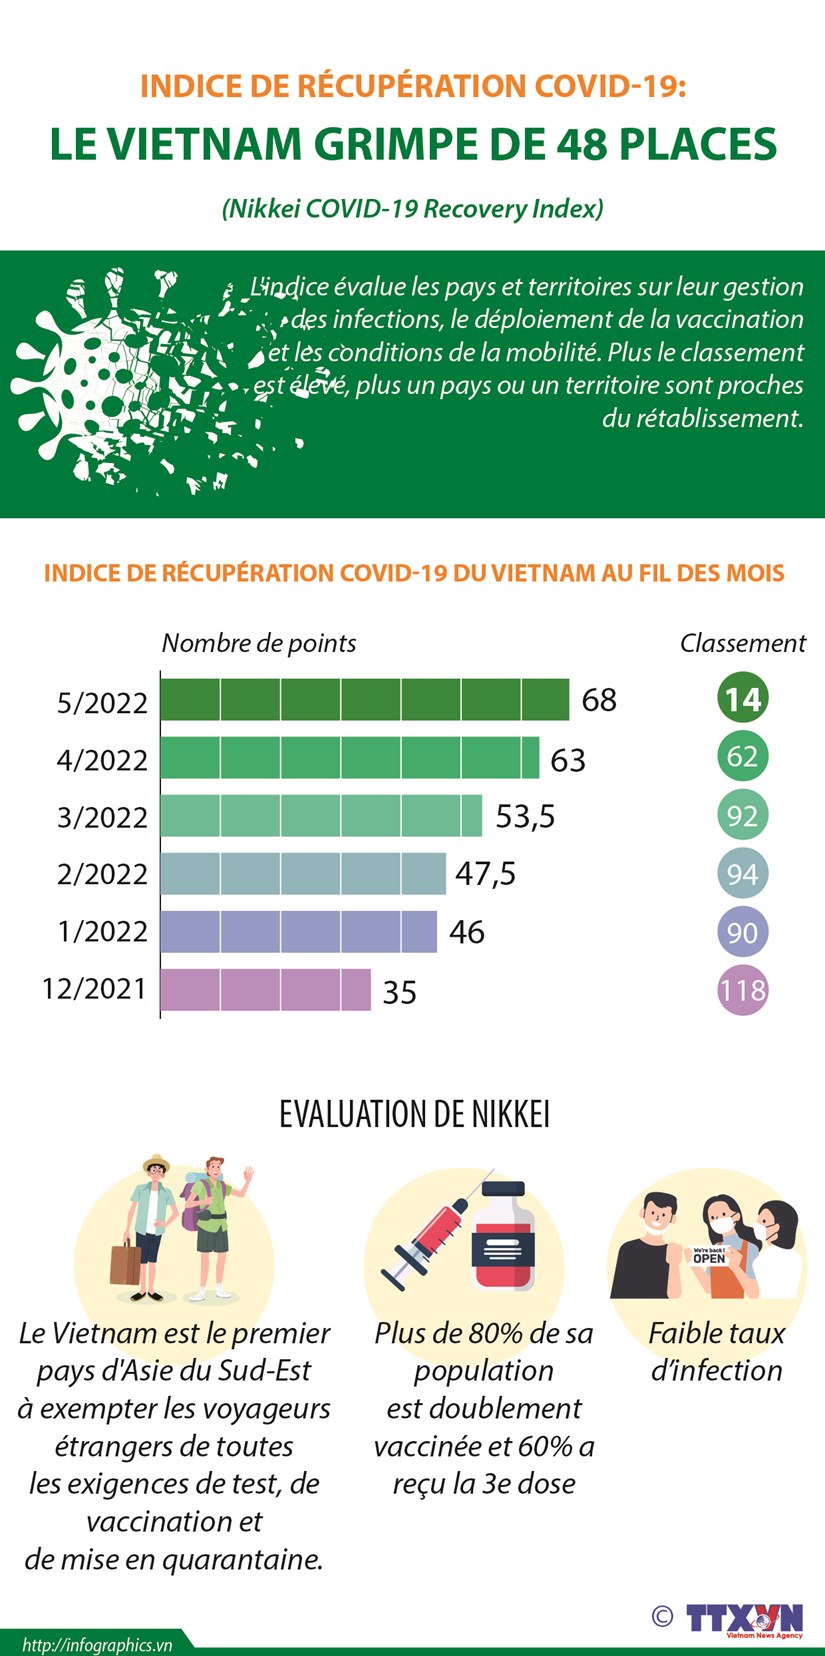 Indice de recuperation COVID-19: le Vietnam grimpe de 48 places hinh anh 1